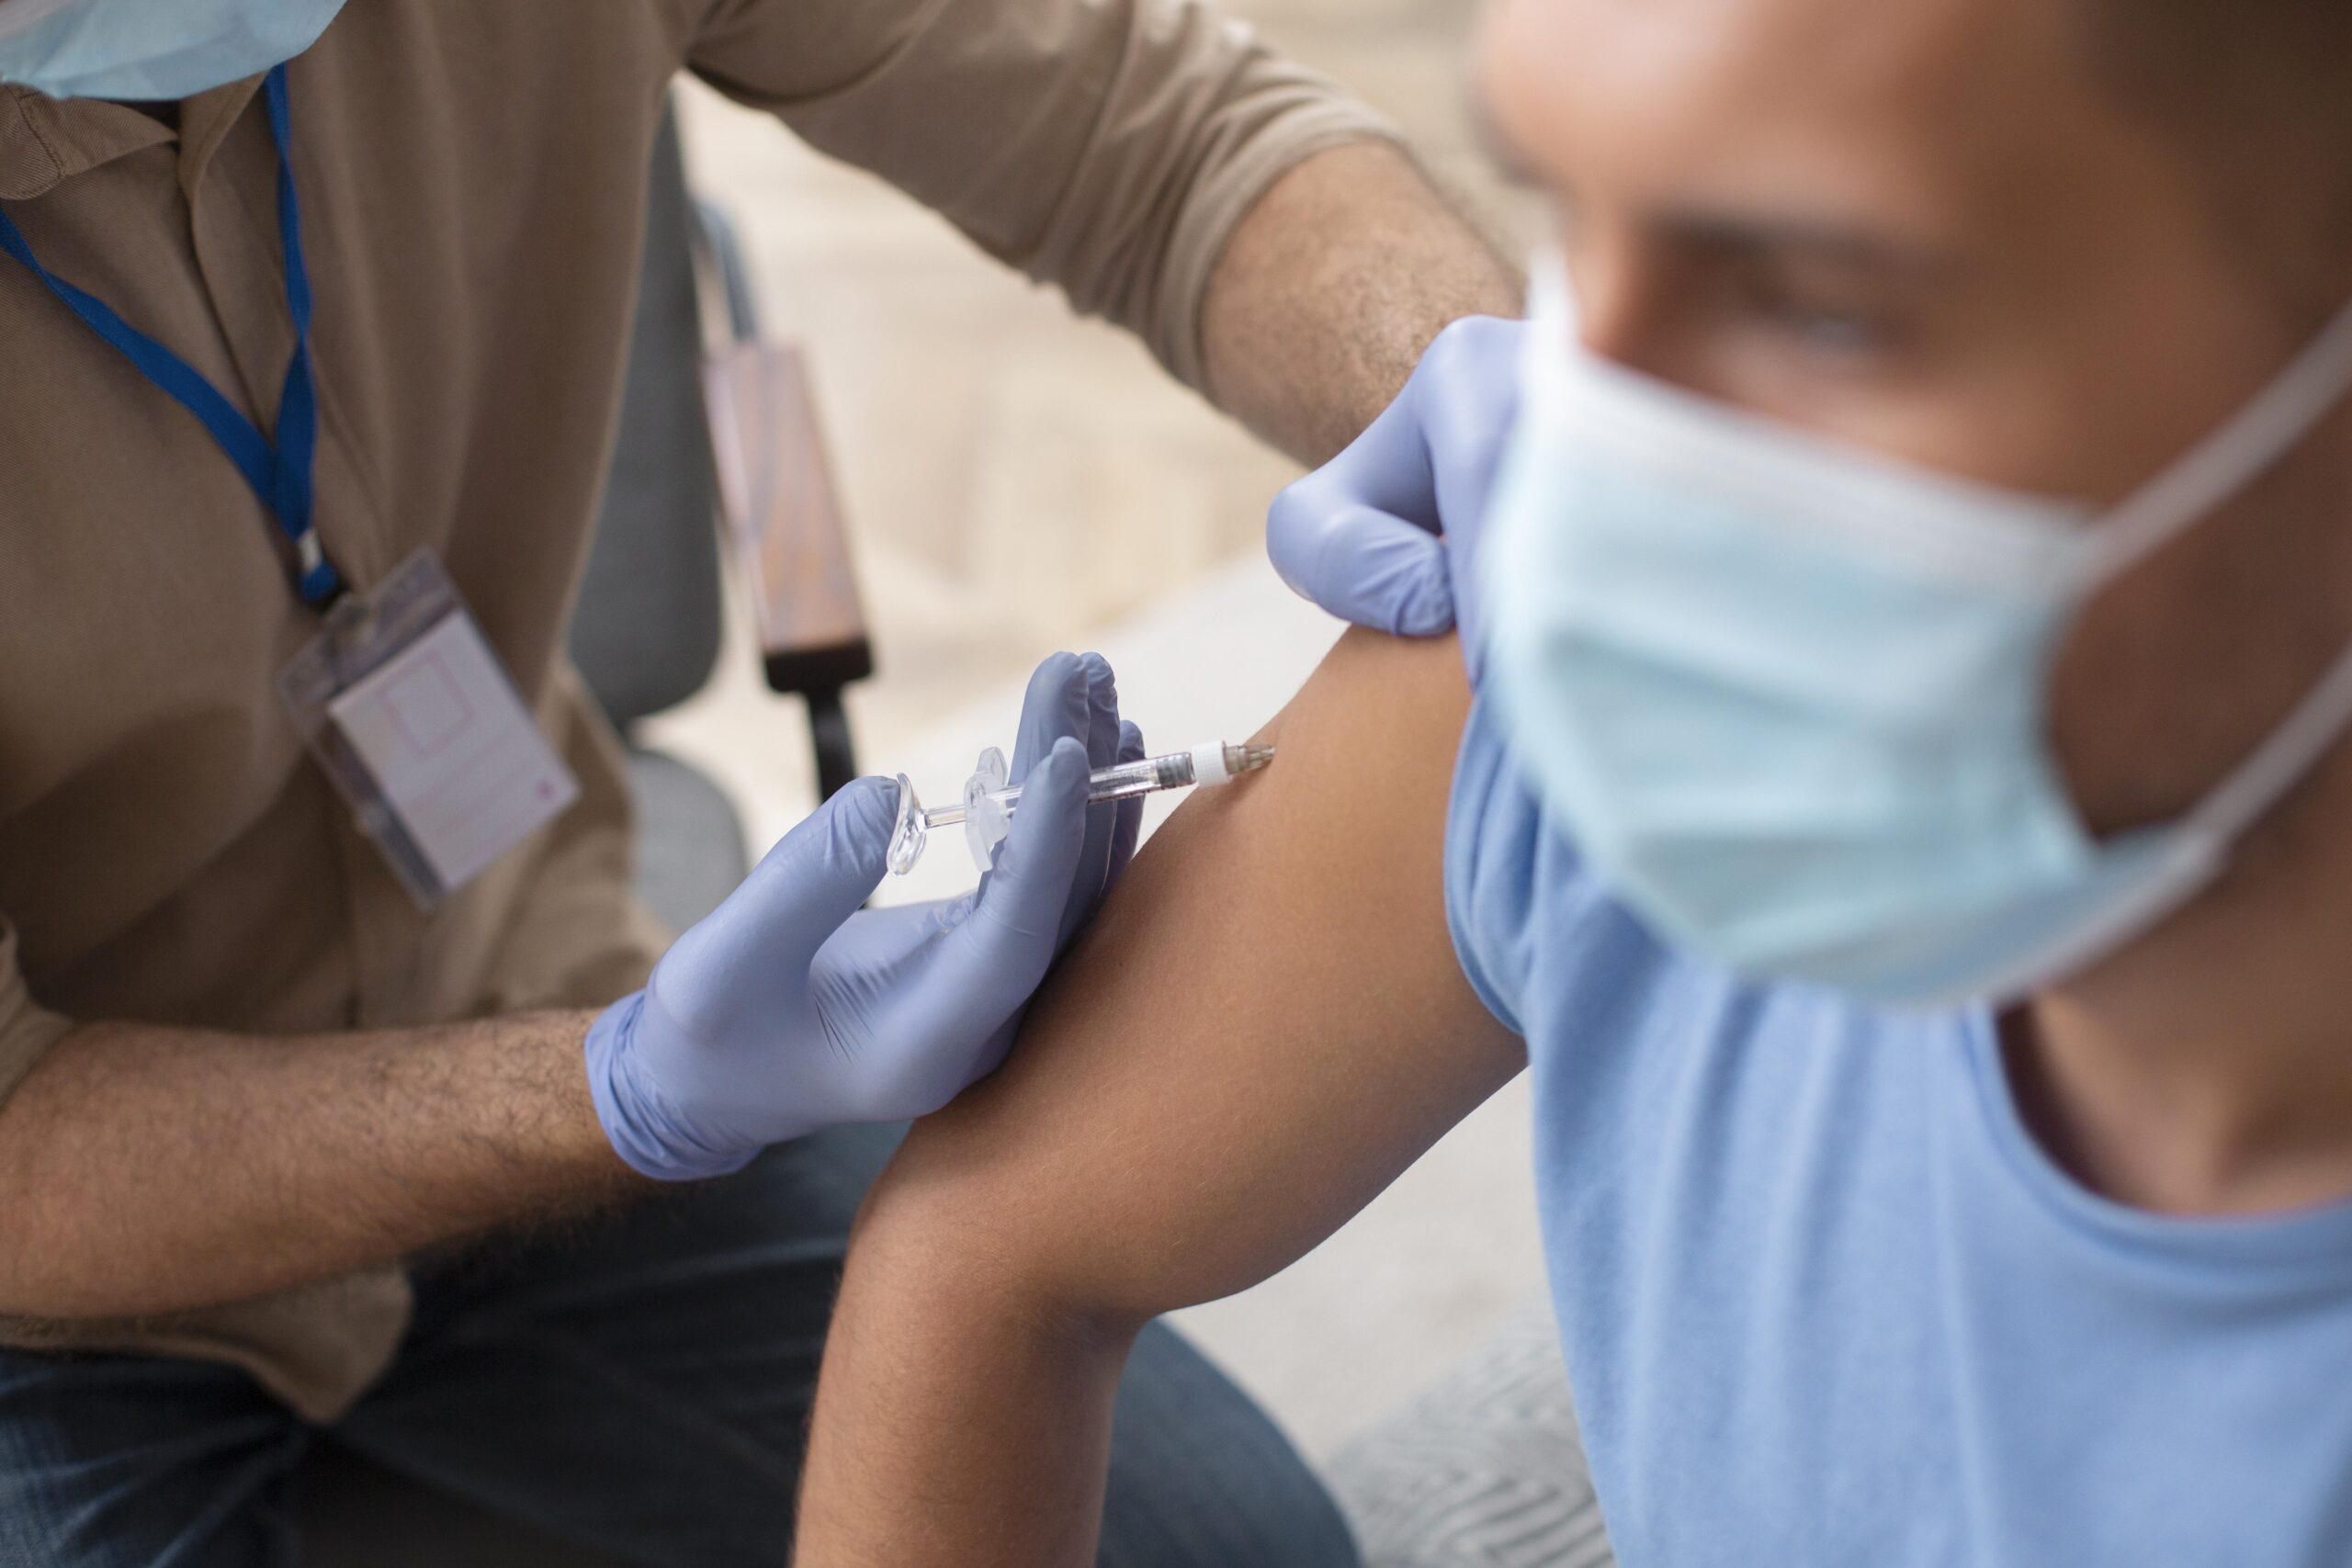 Нова вакцина проти Омікрону буде весною, – глава Pfizer - Новини Здоров’я